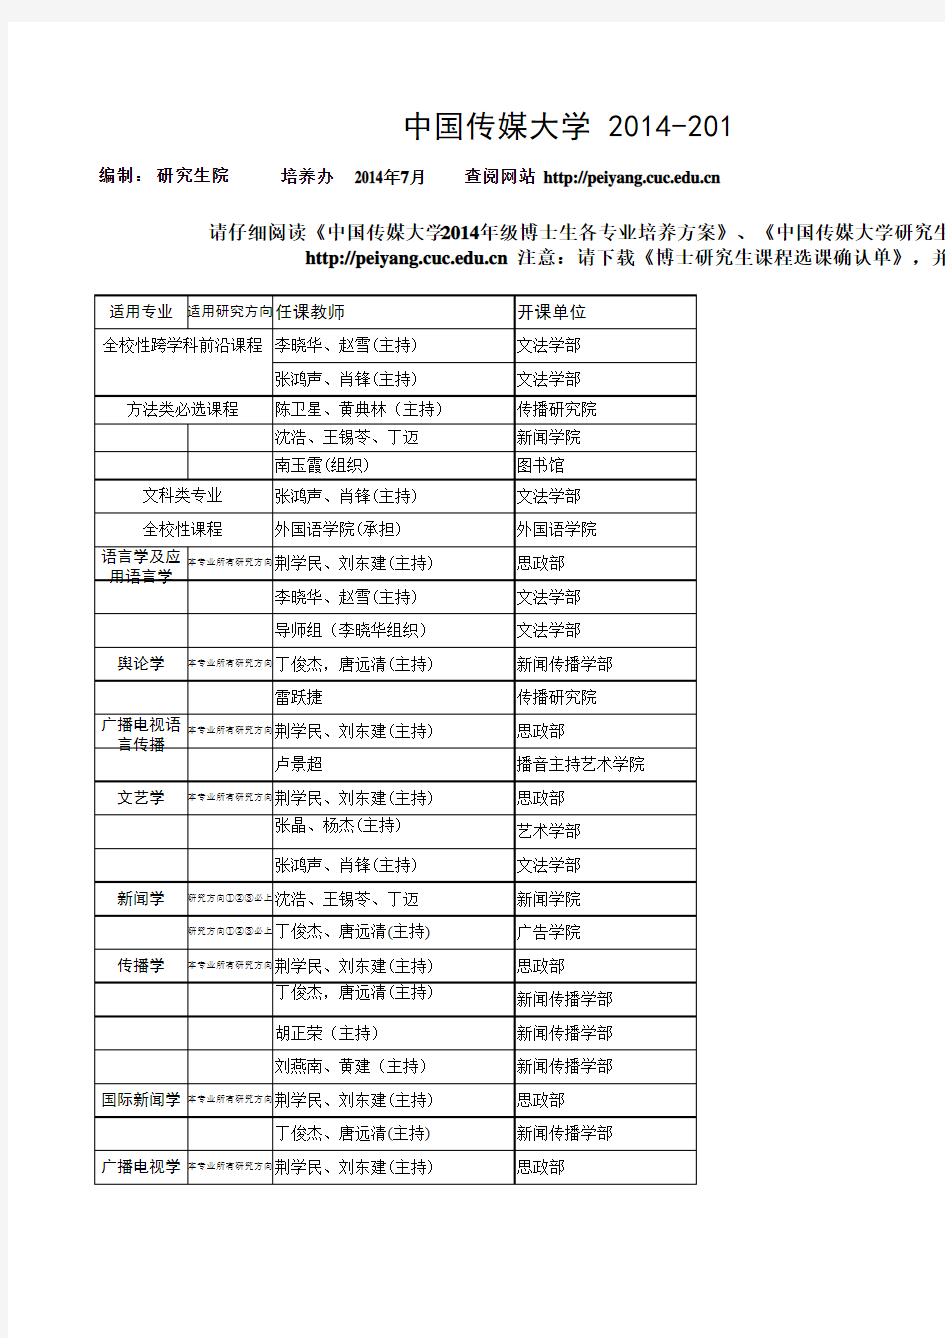 中国传媒大学2014-2015-1博士研究生课程安排